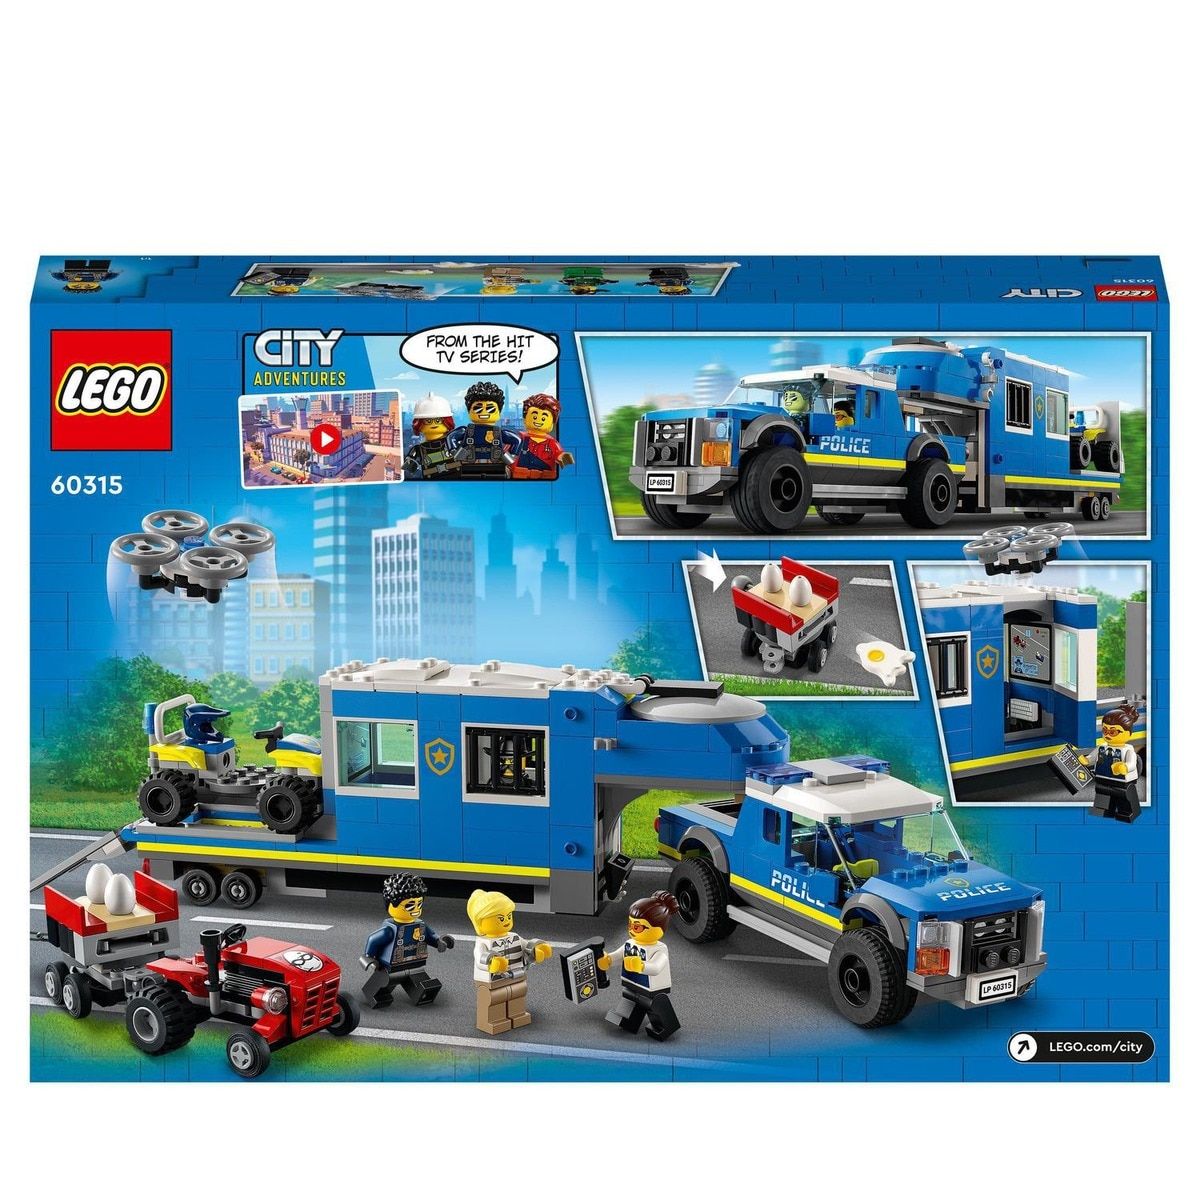 LEGO City 60276 pas cher, Le transport des prisonniers